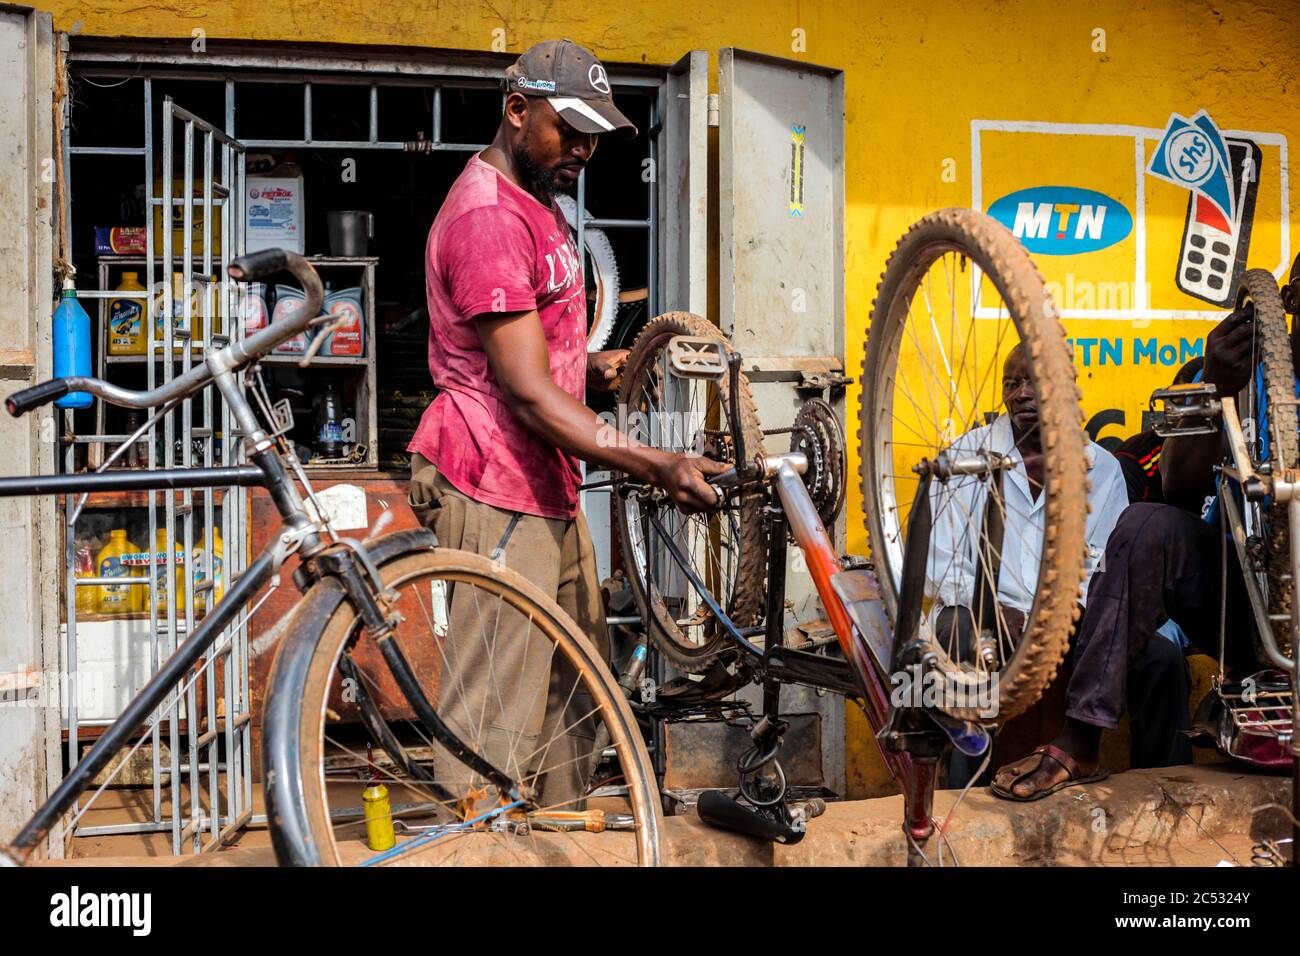 Kampala. 30 juin 2020. Un homme répare une bicyclette à Kampala, capitale de l'Ouganda, le 30 juin 2020. Les gens ont eu recours au cyclisme comme moyen de transport favorable dans le contexte de la pandémie COVID-19 en Ouganda. Crédit: Hajarah Nalwadda/Xinhua/Alamy Live News Banque D'Images